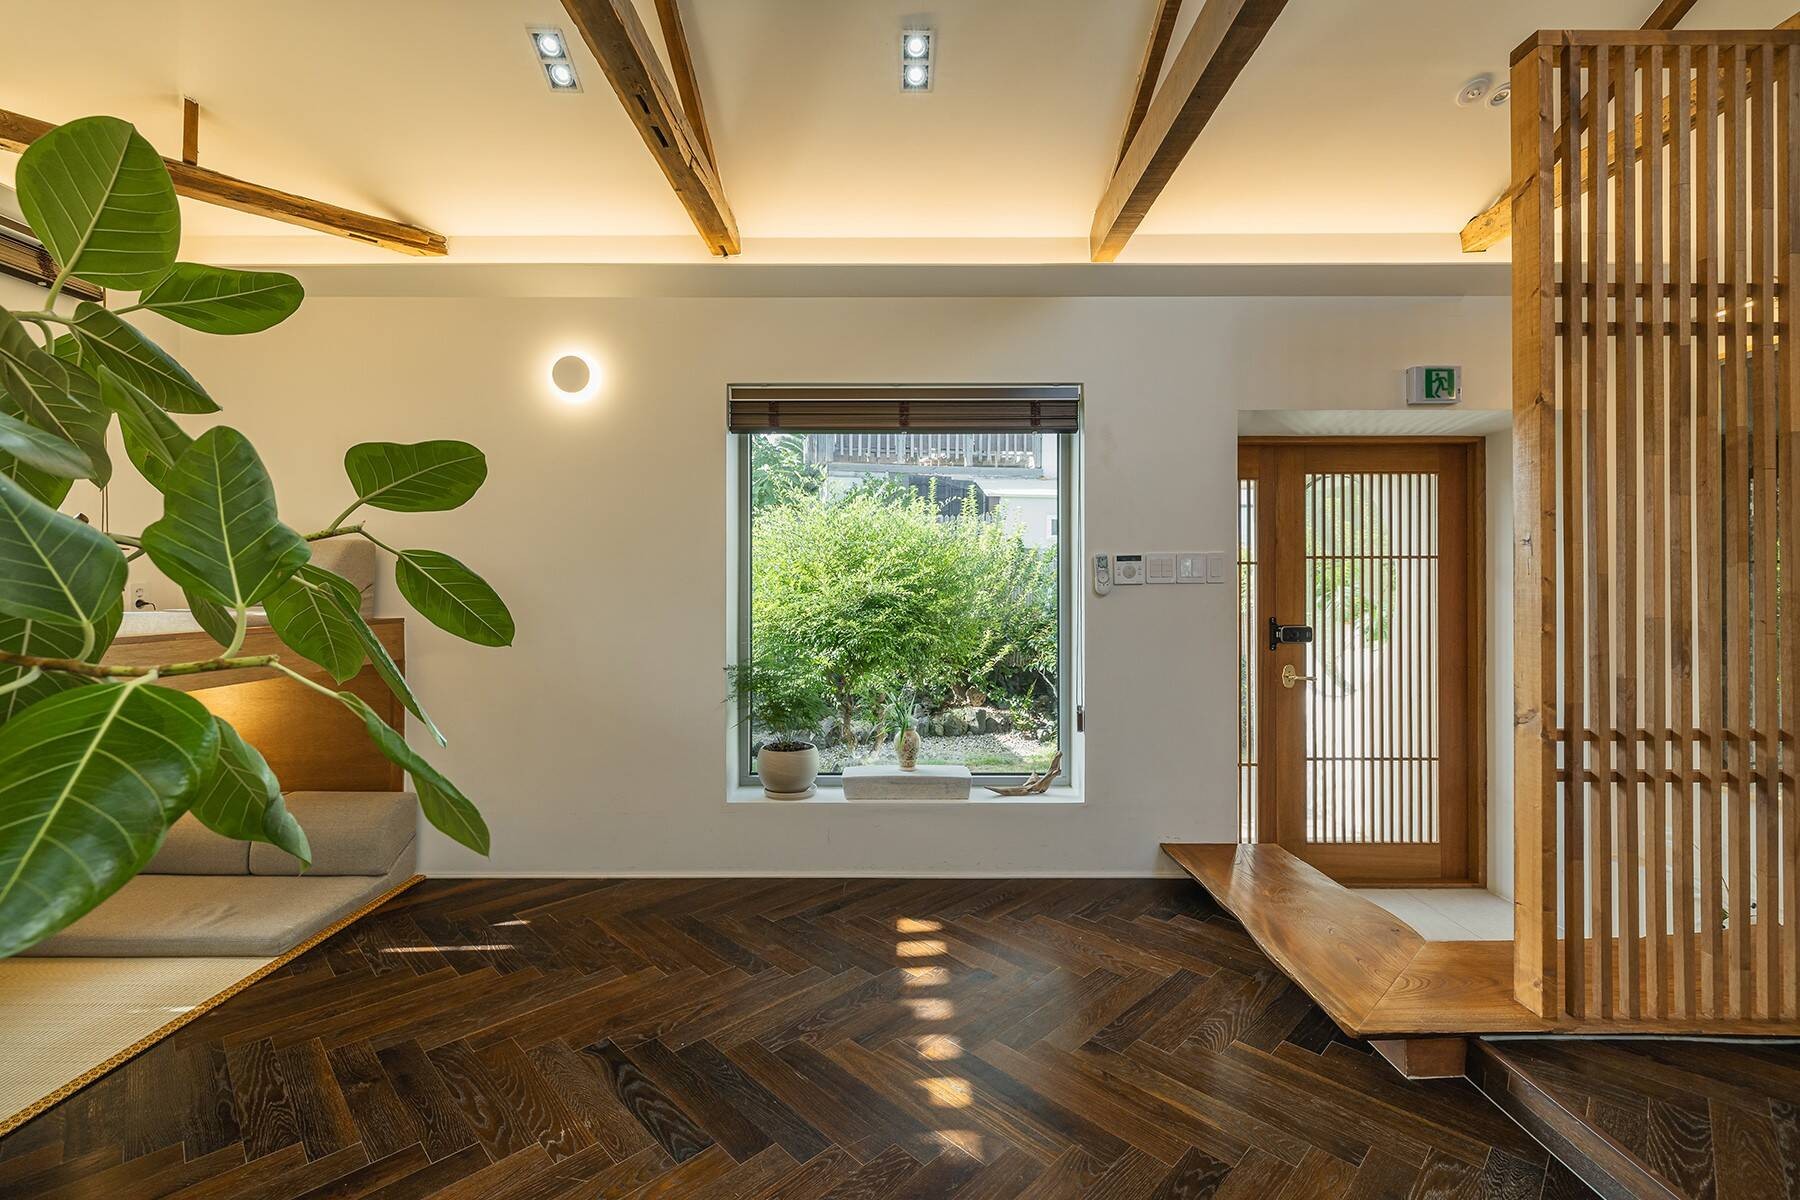 
Không gian phòng khách ấm cúng với chất liệu gỗ làm chủ đạo, là nơi đón chào du khách đầu tiên khi bước chân vào trong nhà
